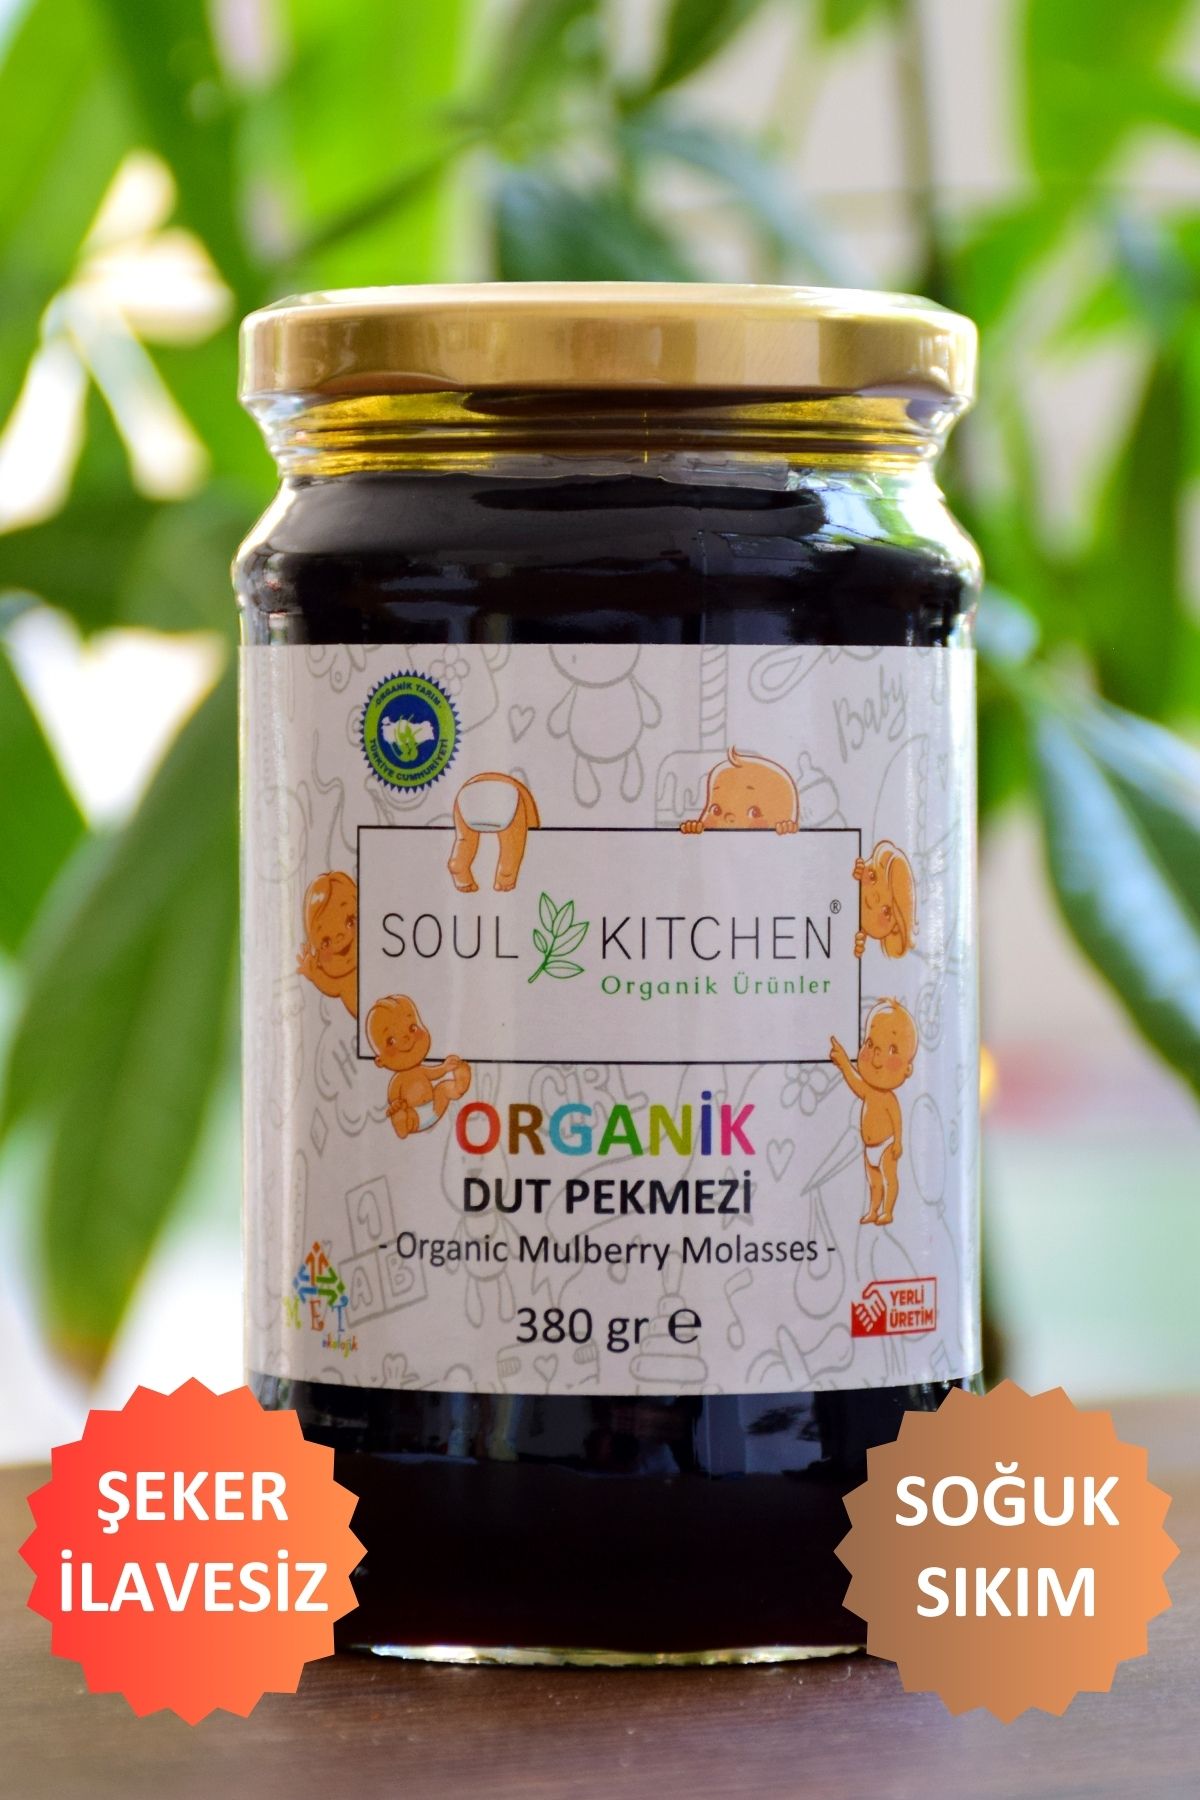 Soul Kitchen Organik Ürünler Organik Bebek Dut Pekmezi 380gr (SOĞUK SIKIM) (ŞEKER İLAVESİZ)